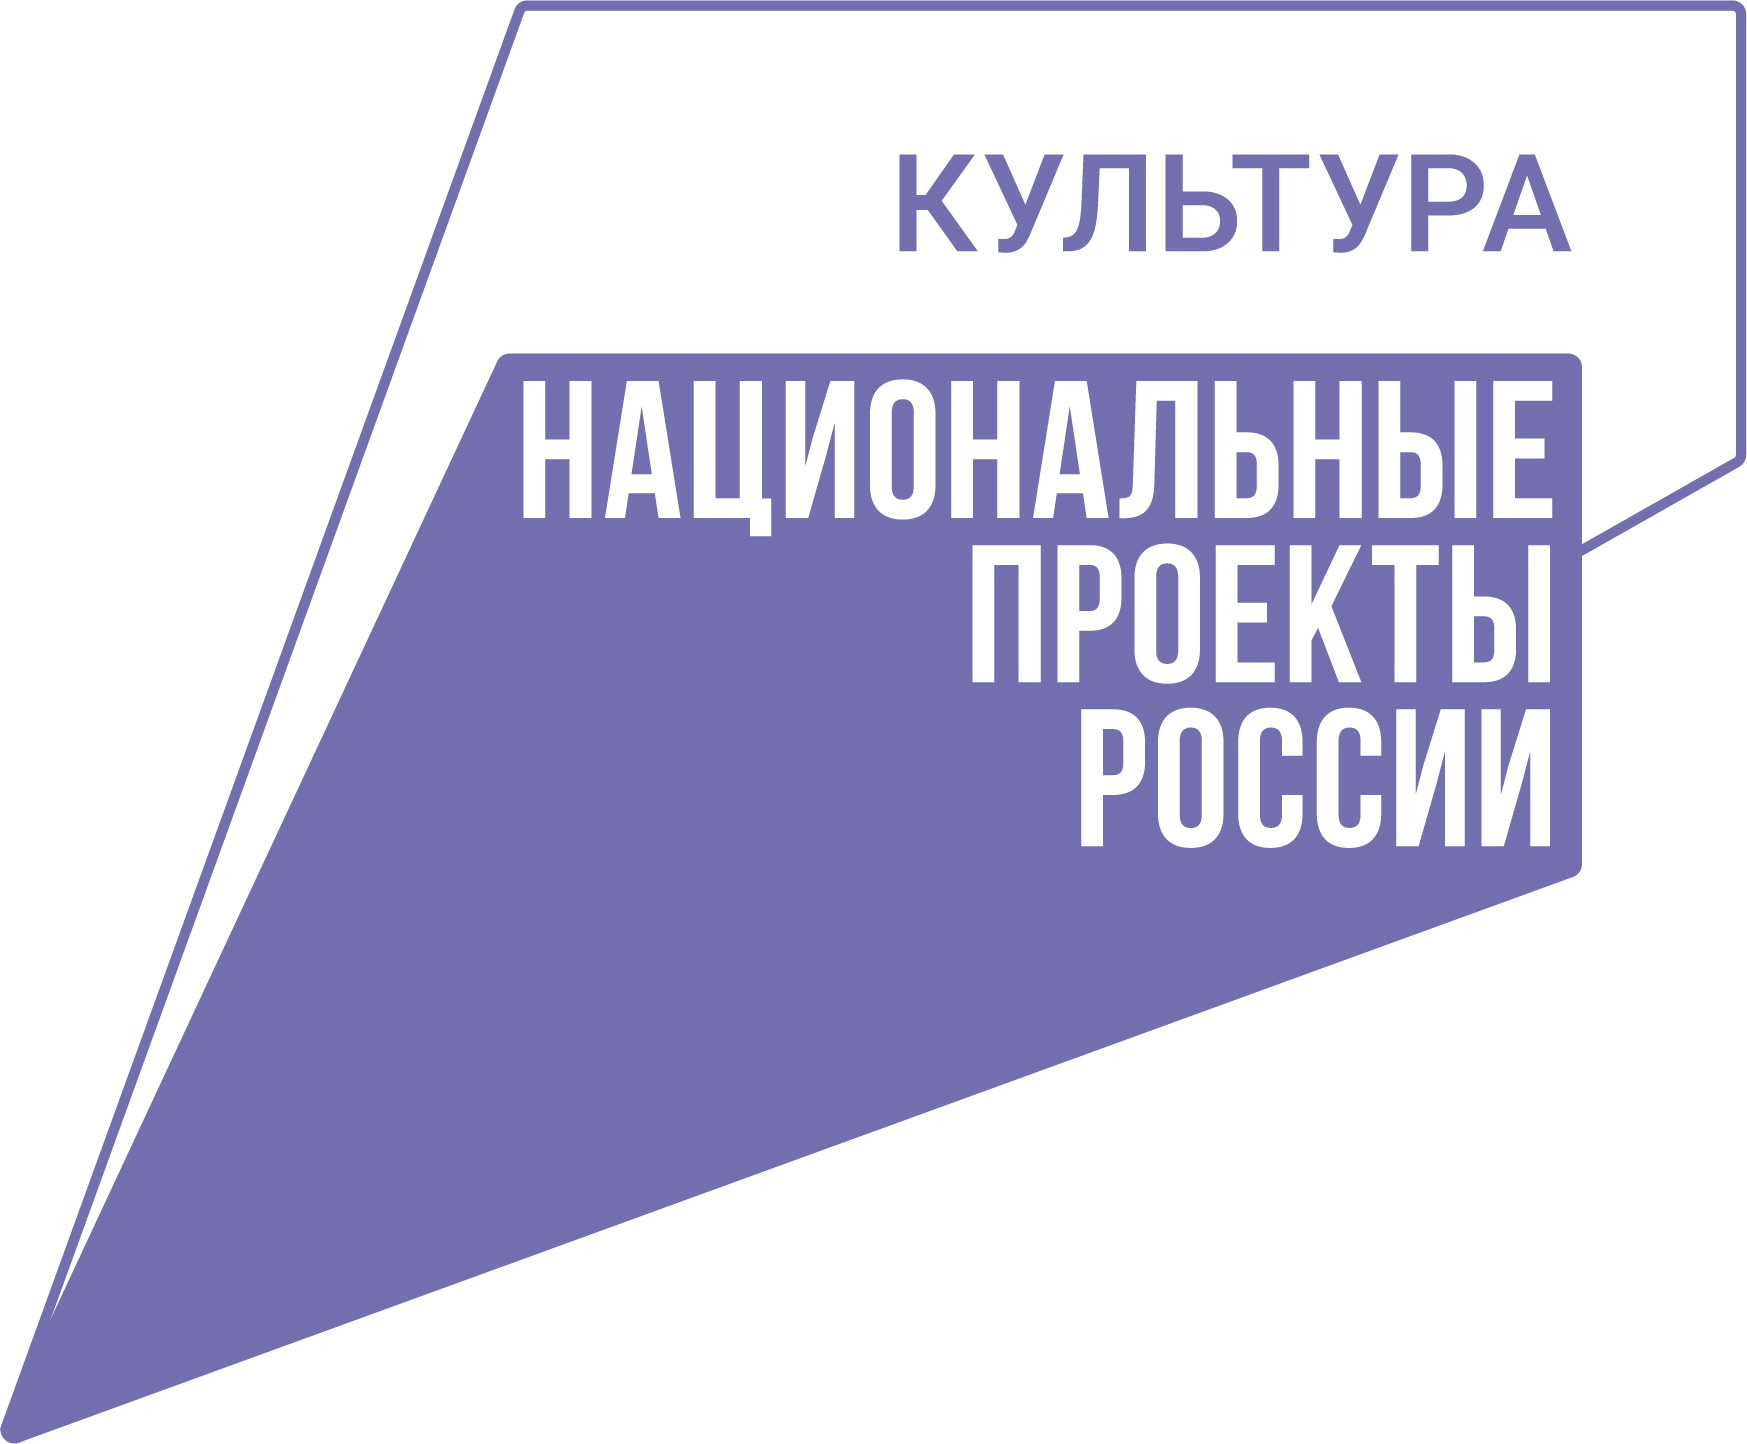 Нацпроект «Культура» в Красноярском крае: по программе «Фонда кино» будут модернизированы два кинозала